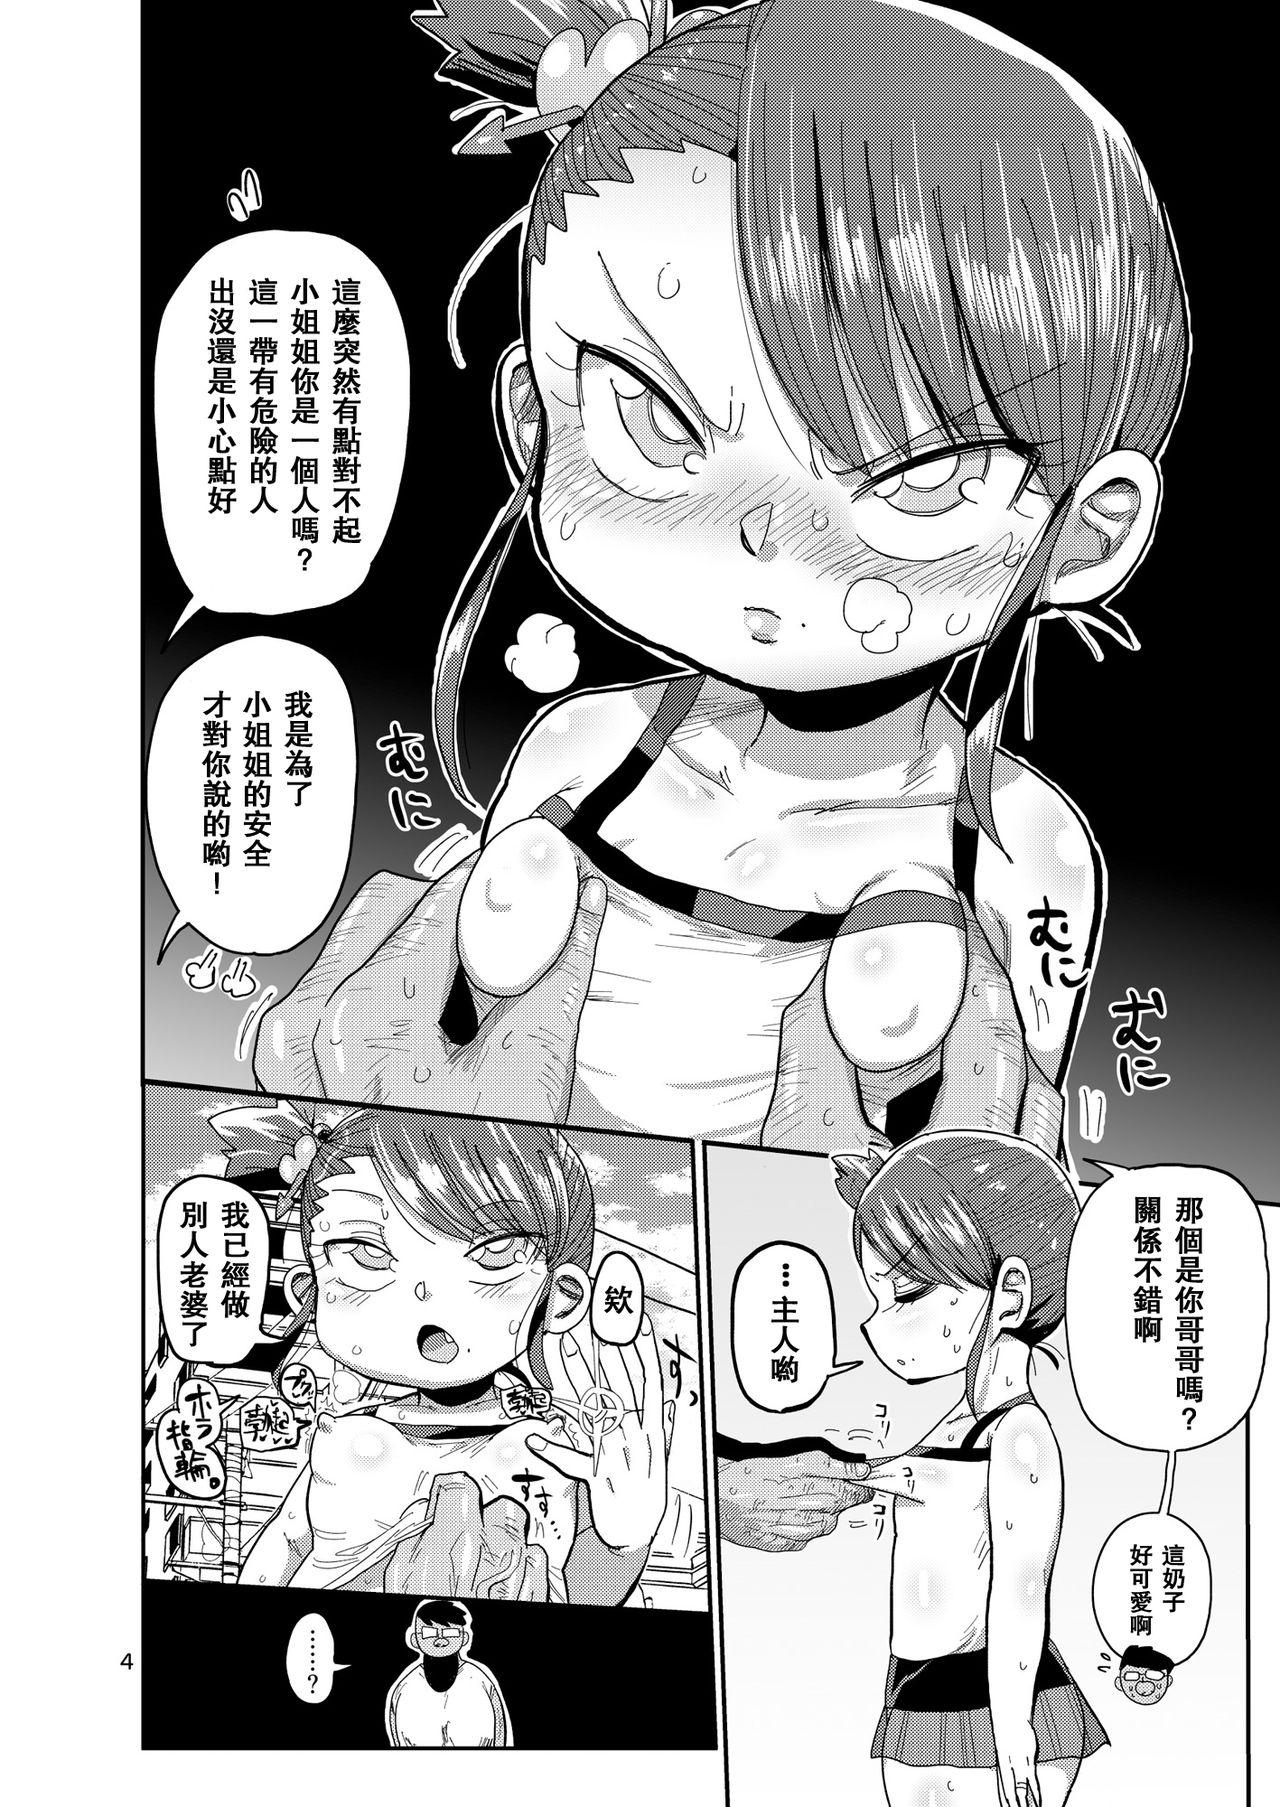 Smooth Watashi no Mawari ni wa Kiken ga Ippai! - Original Safada - Page 3